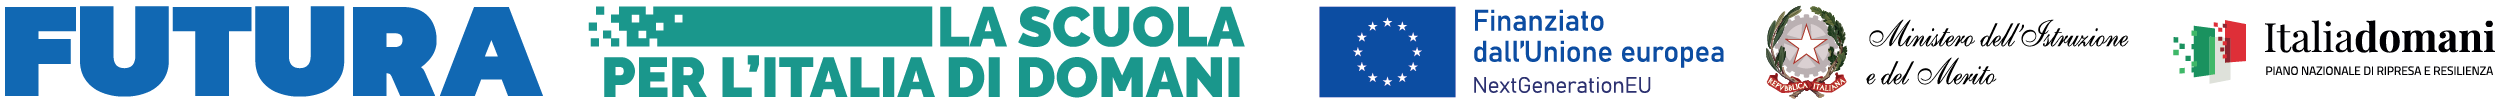 Logo - Futura - la scuola per l'italia di domani